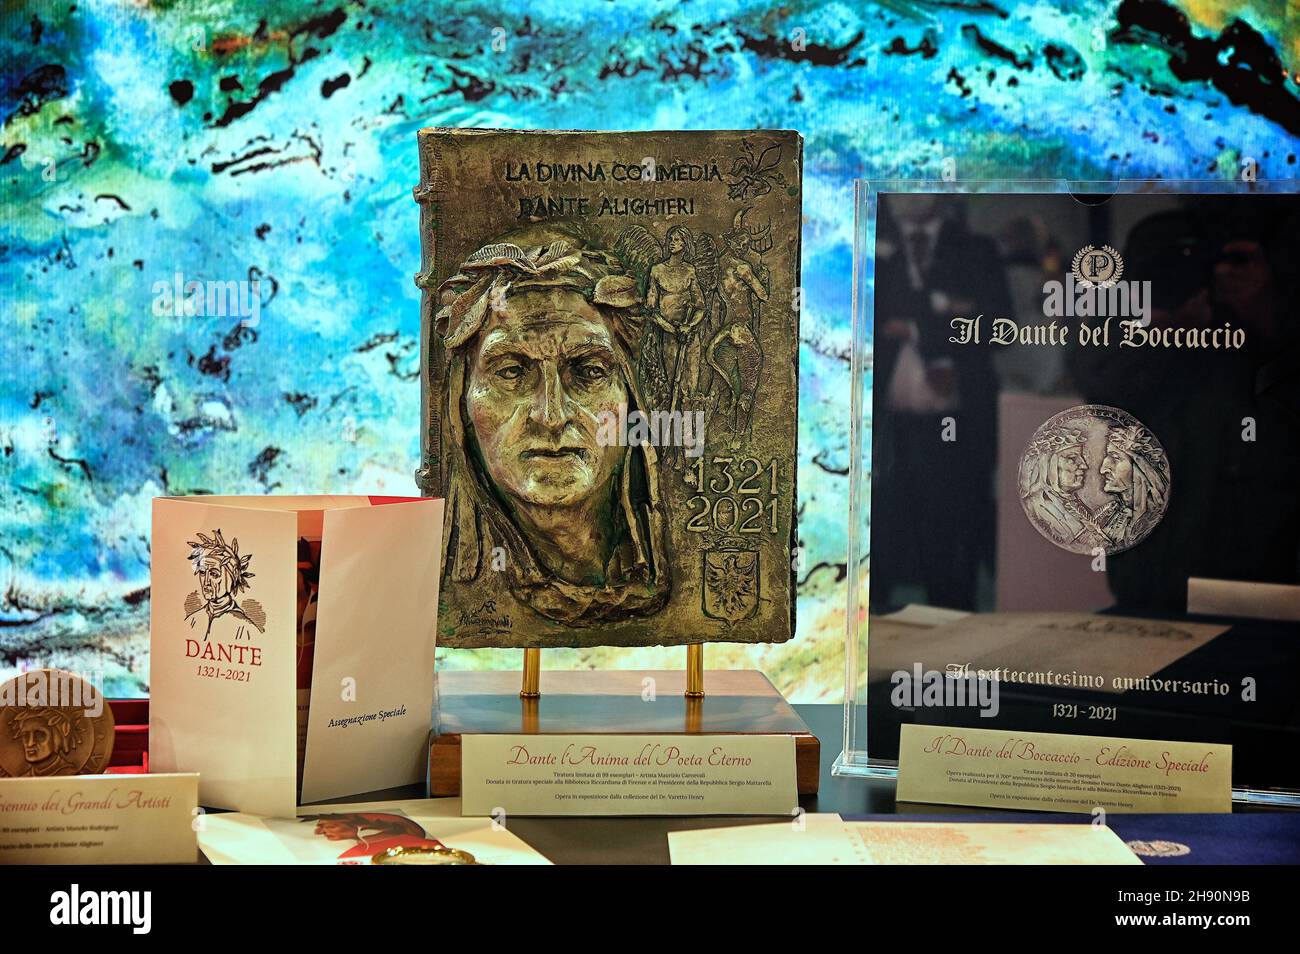 TORINO, ITALIA - 17 ottobre 2021: Opere artistiche commemorative per il poeta italiano Dante Alighieri in mostra in una fiera culturale di Torino Foto Stock